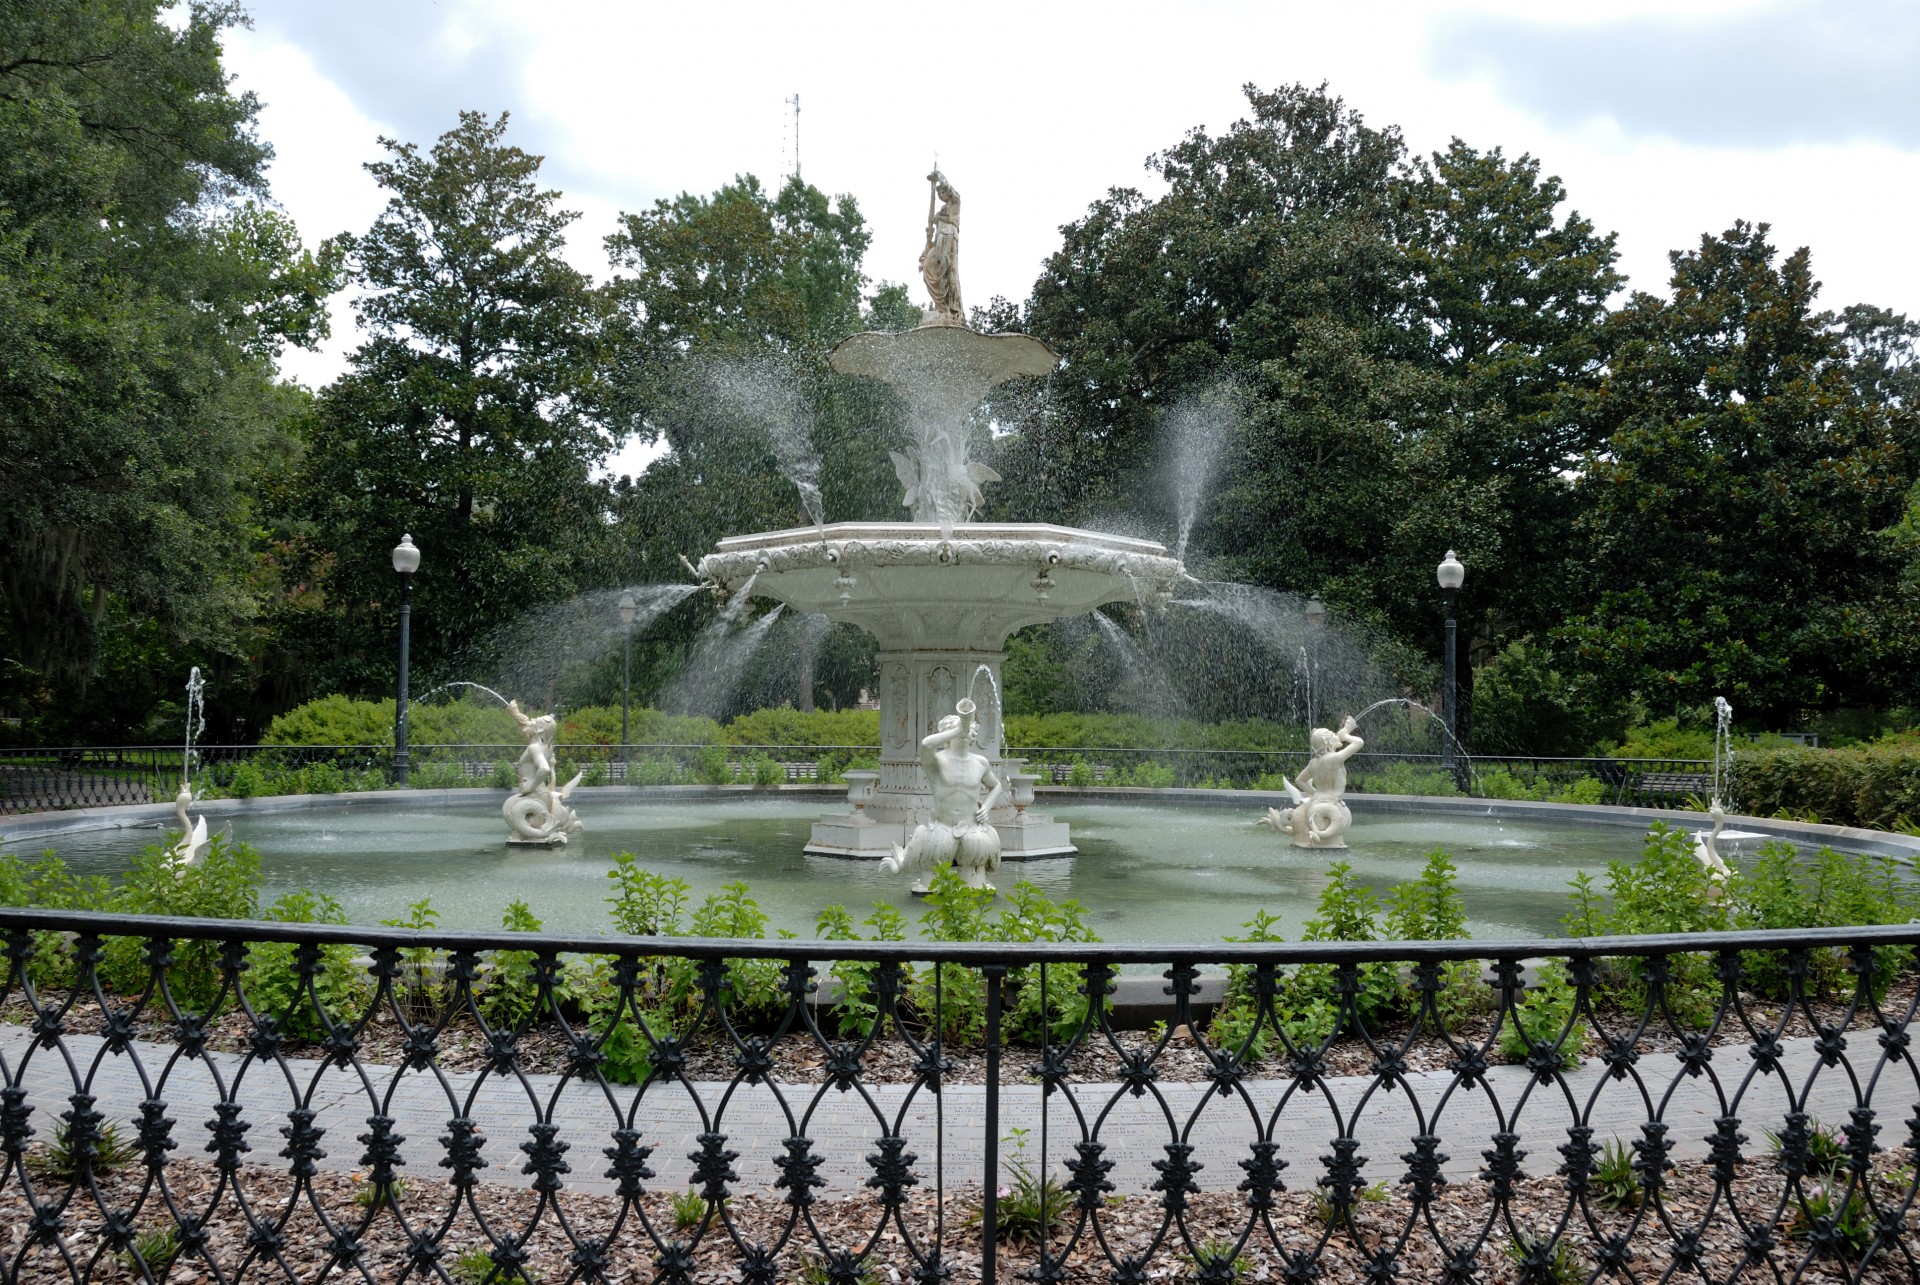 Forsyth park and fountain at Savannah, Georgia